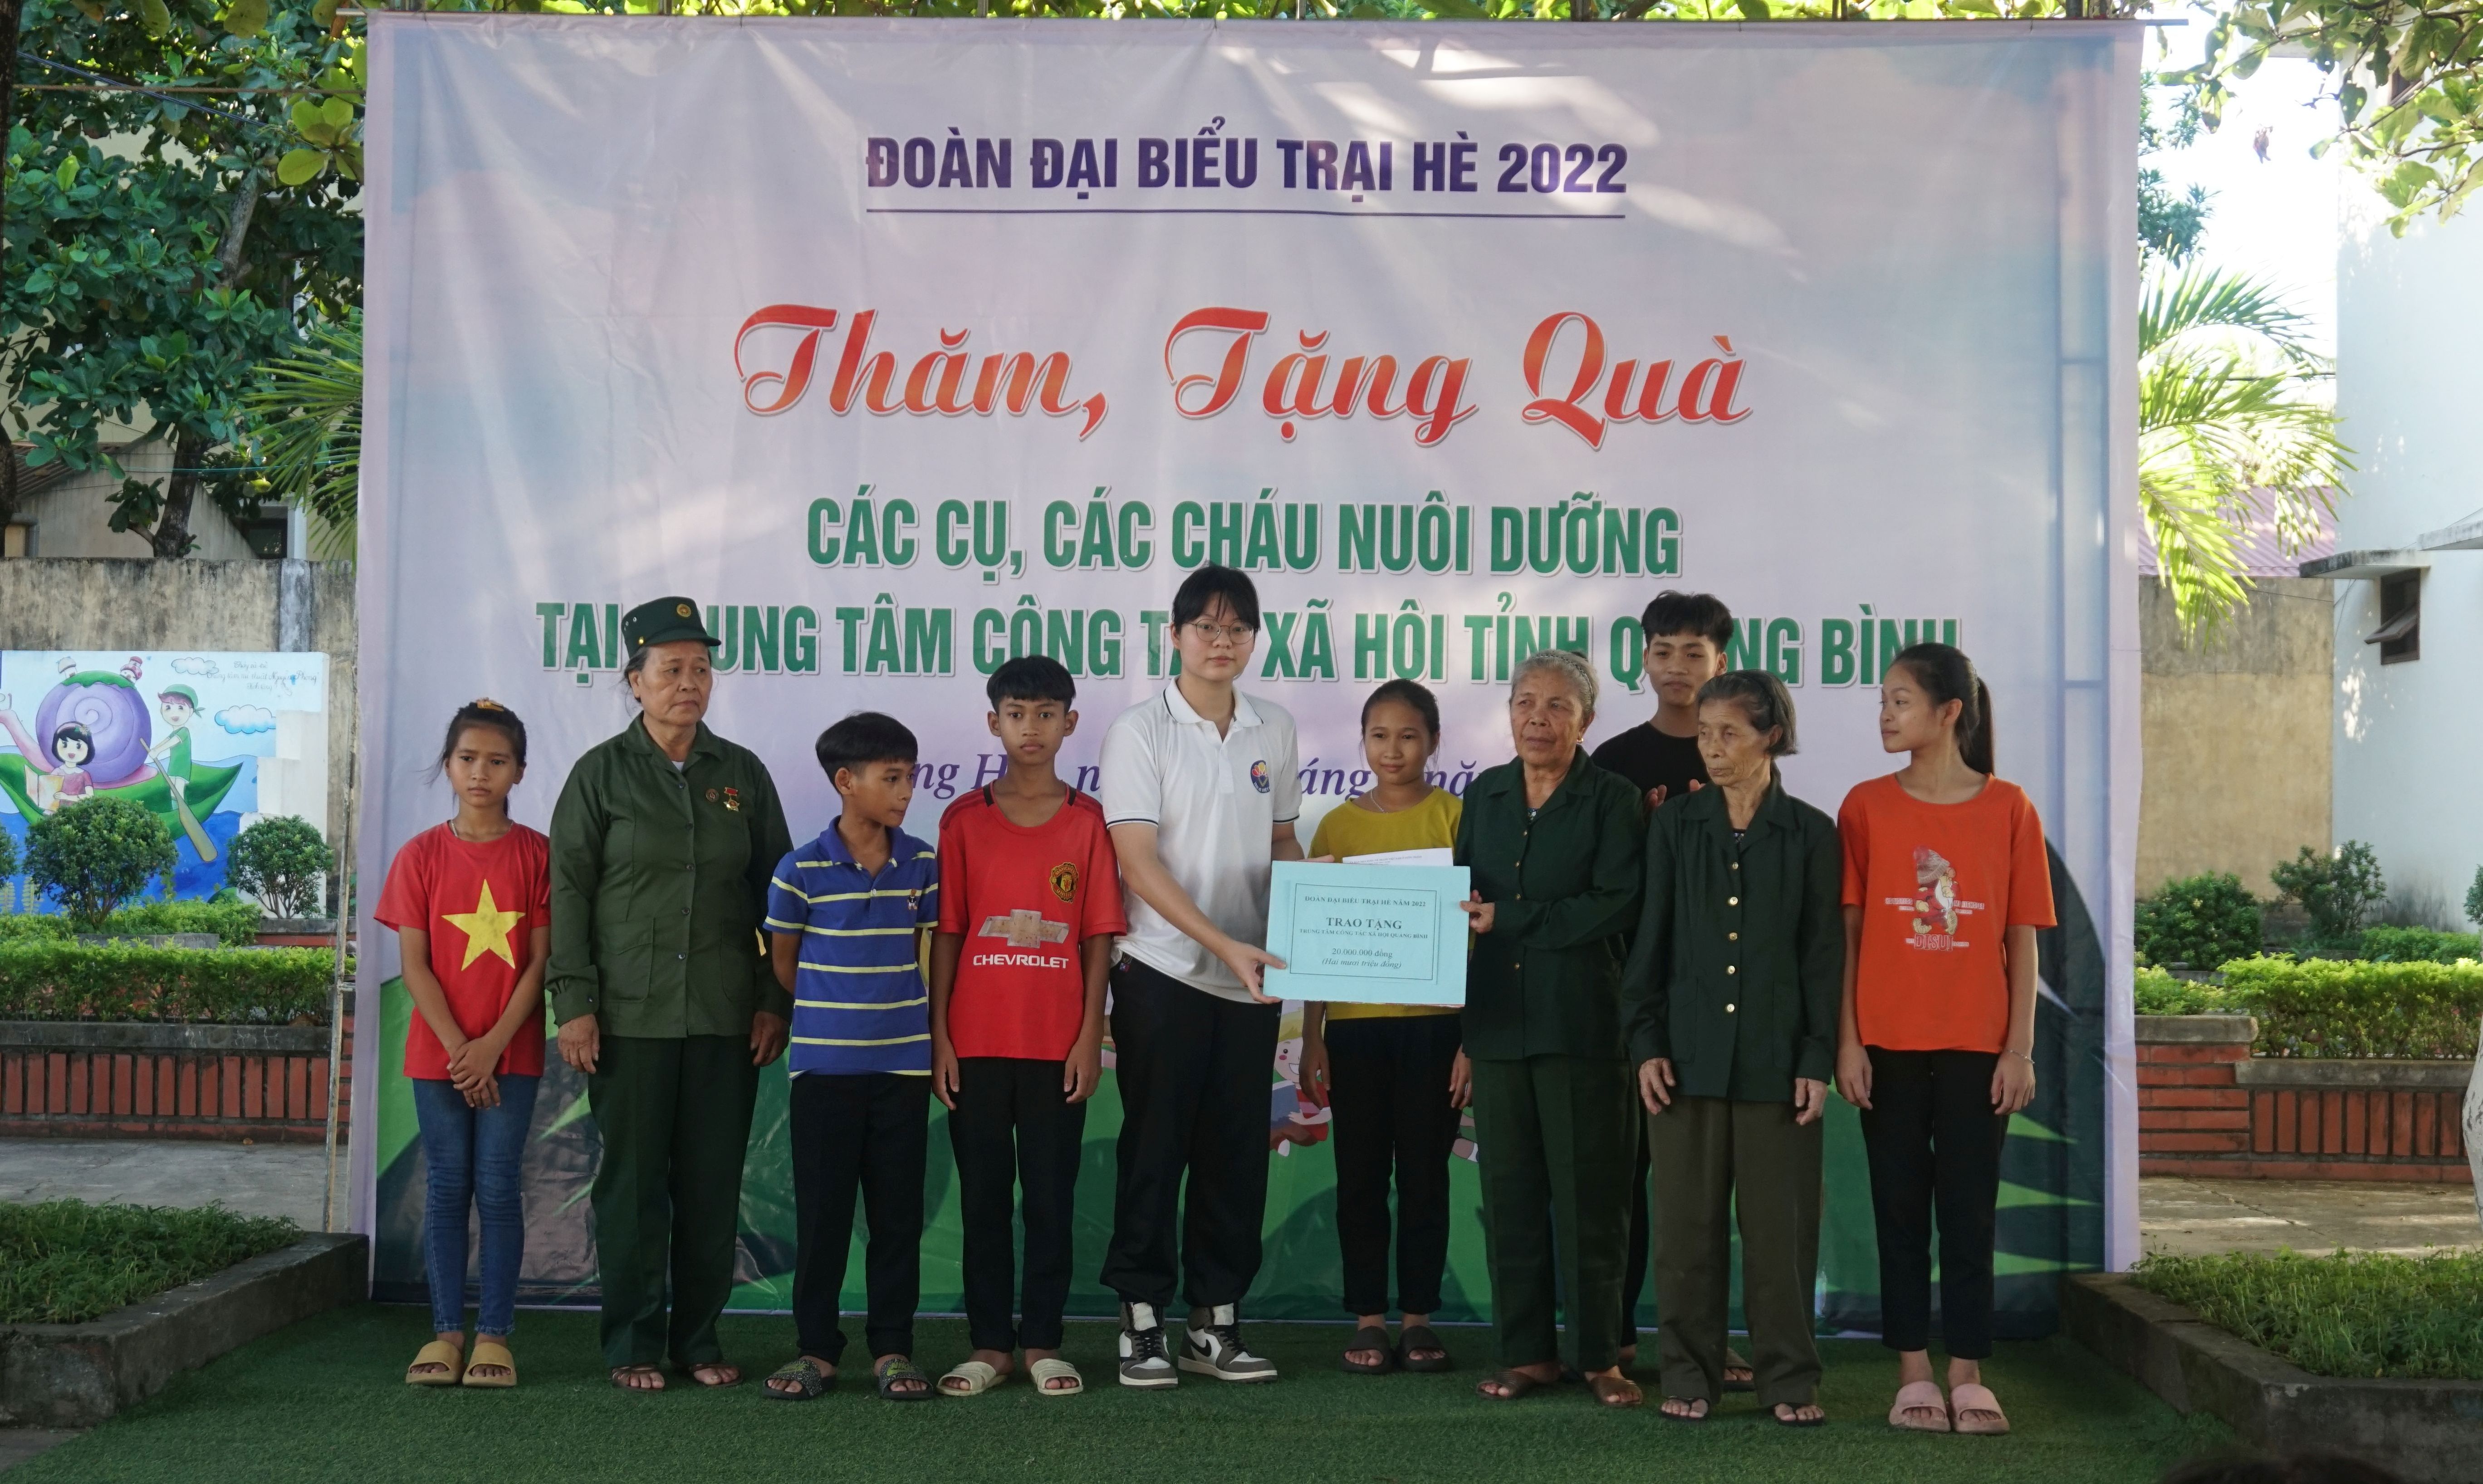 Đoàn đại biểu tham dự “Trại hè Việt Nam 2022” tặng 20 triệu đồng cho Trung tâm công tác xã hội tỉnh Quảng Bình…